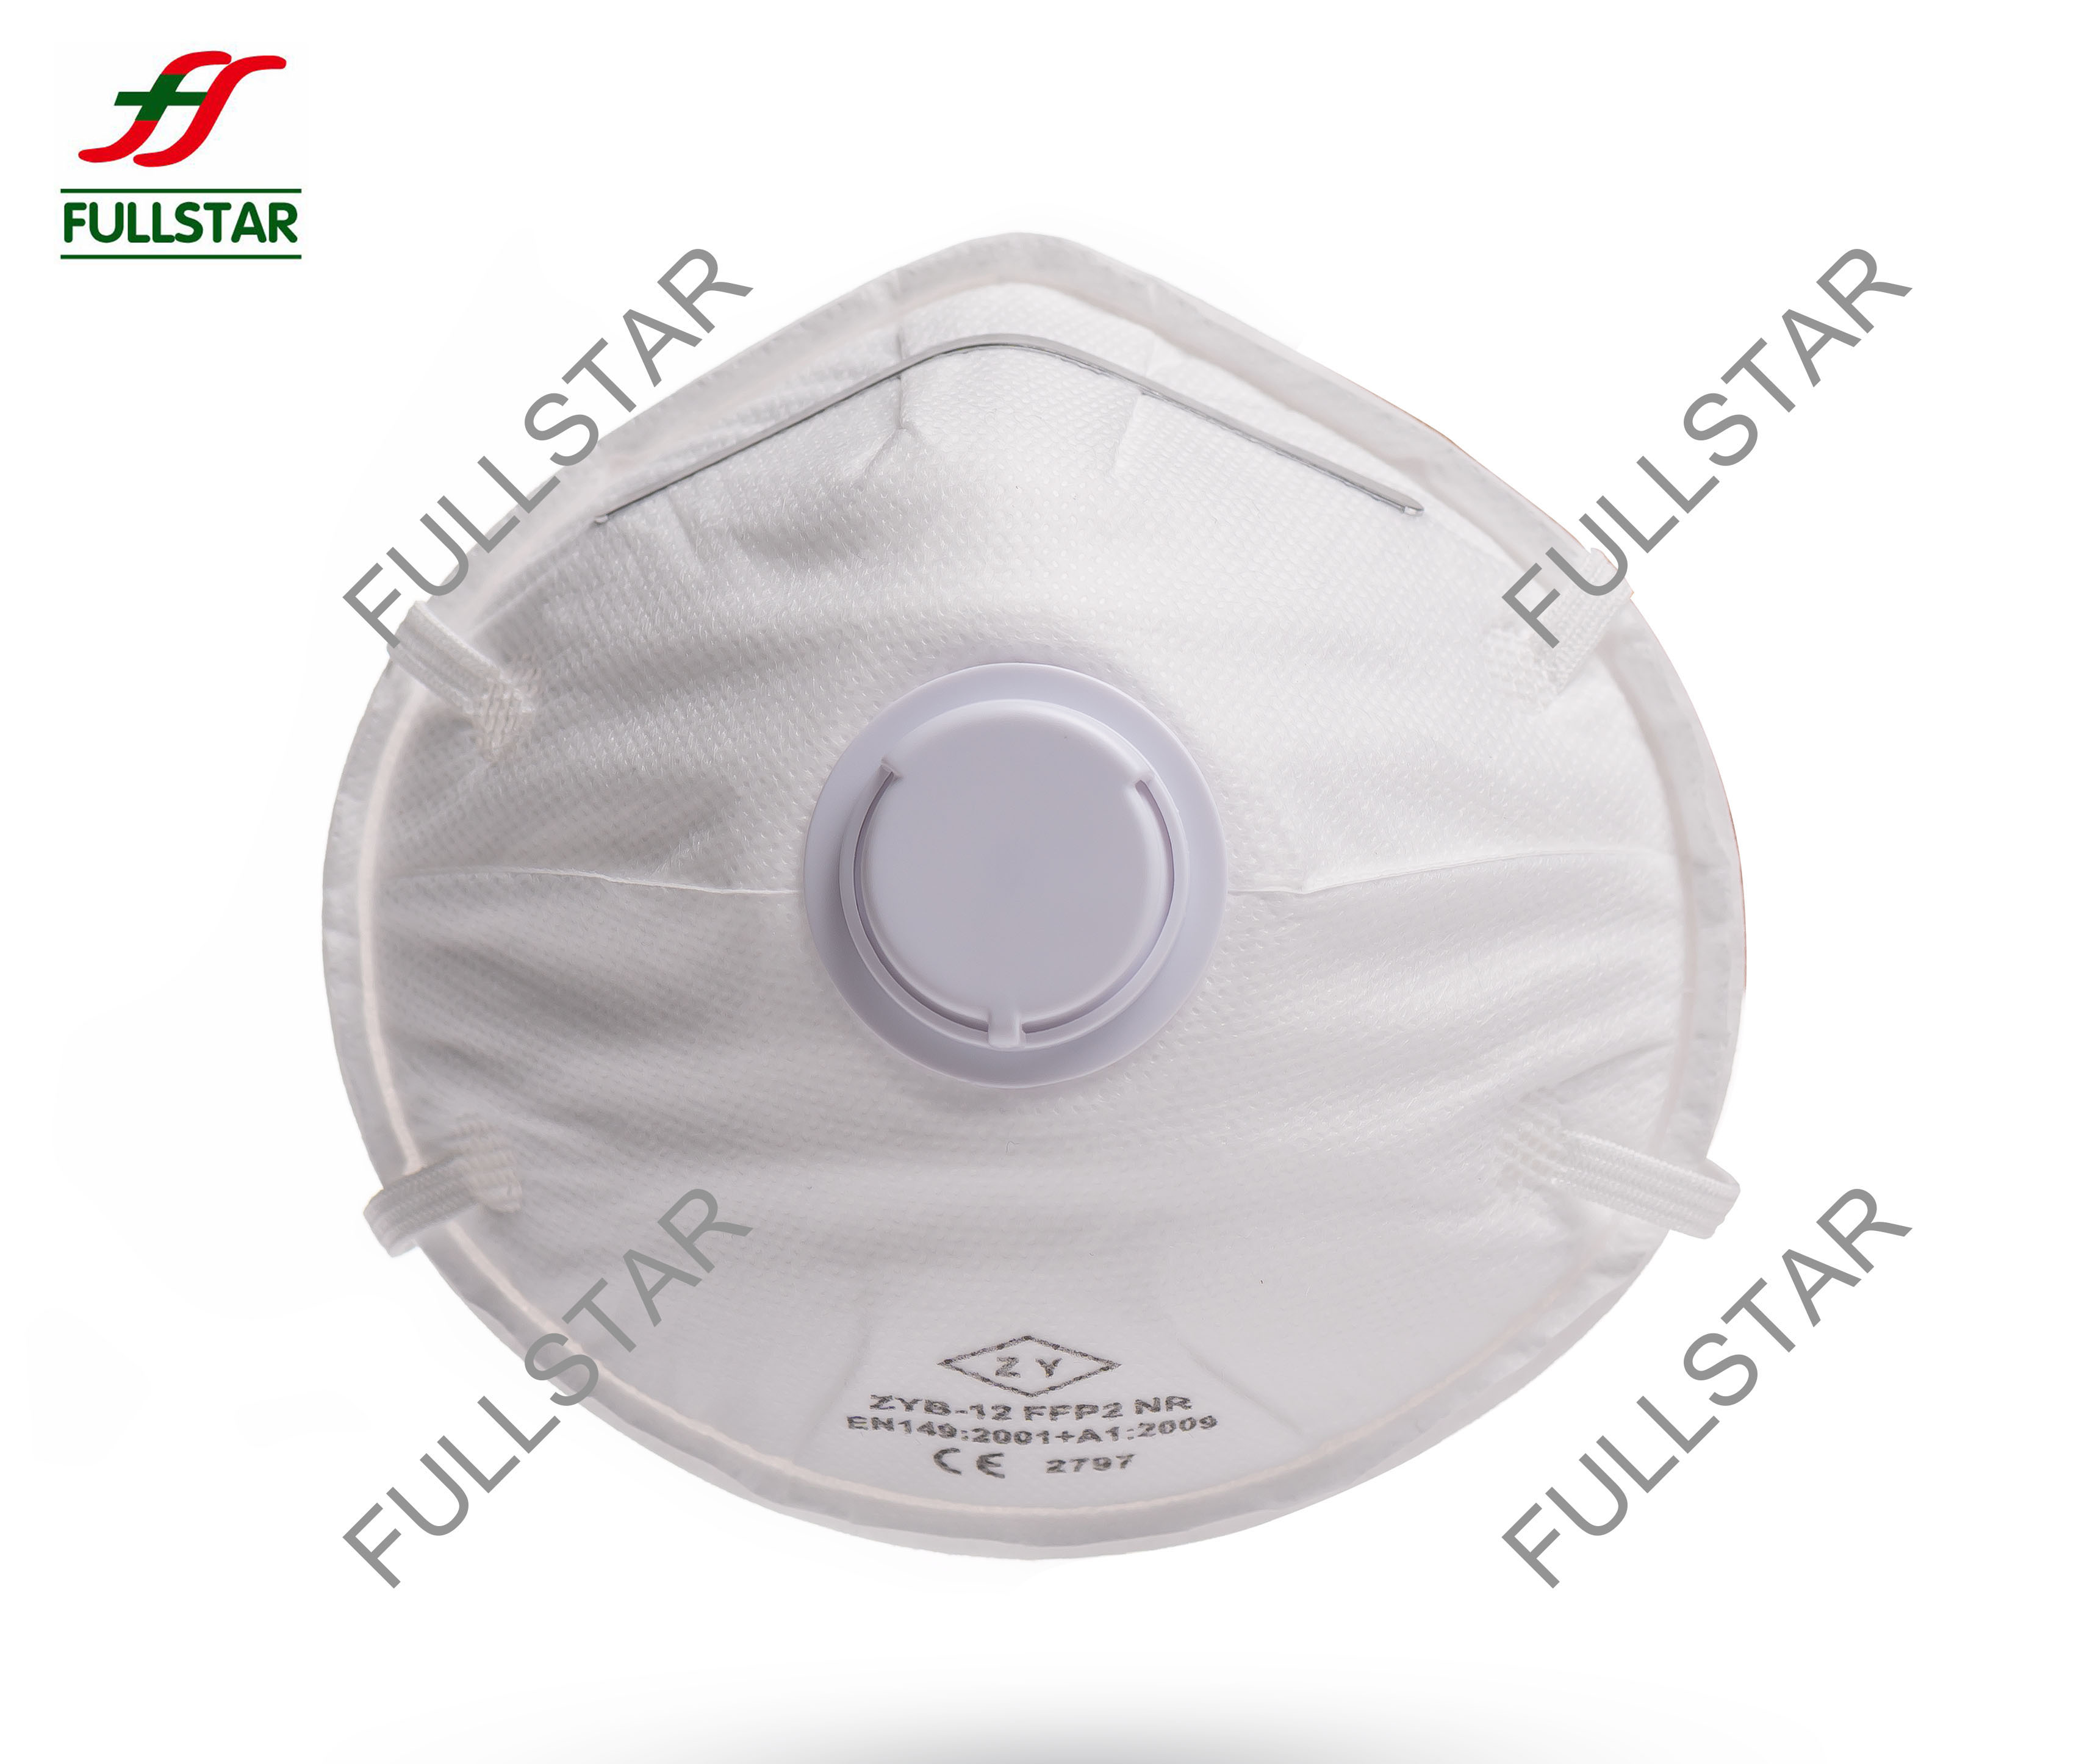 FFP2 kegelvormig gezichtsmasker met ventiel